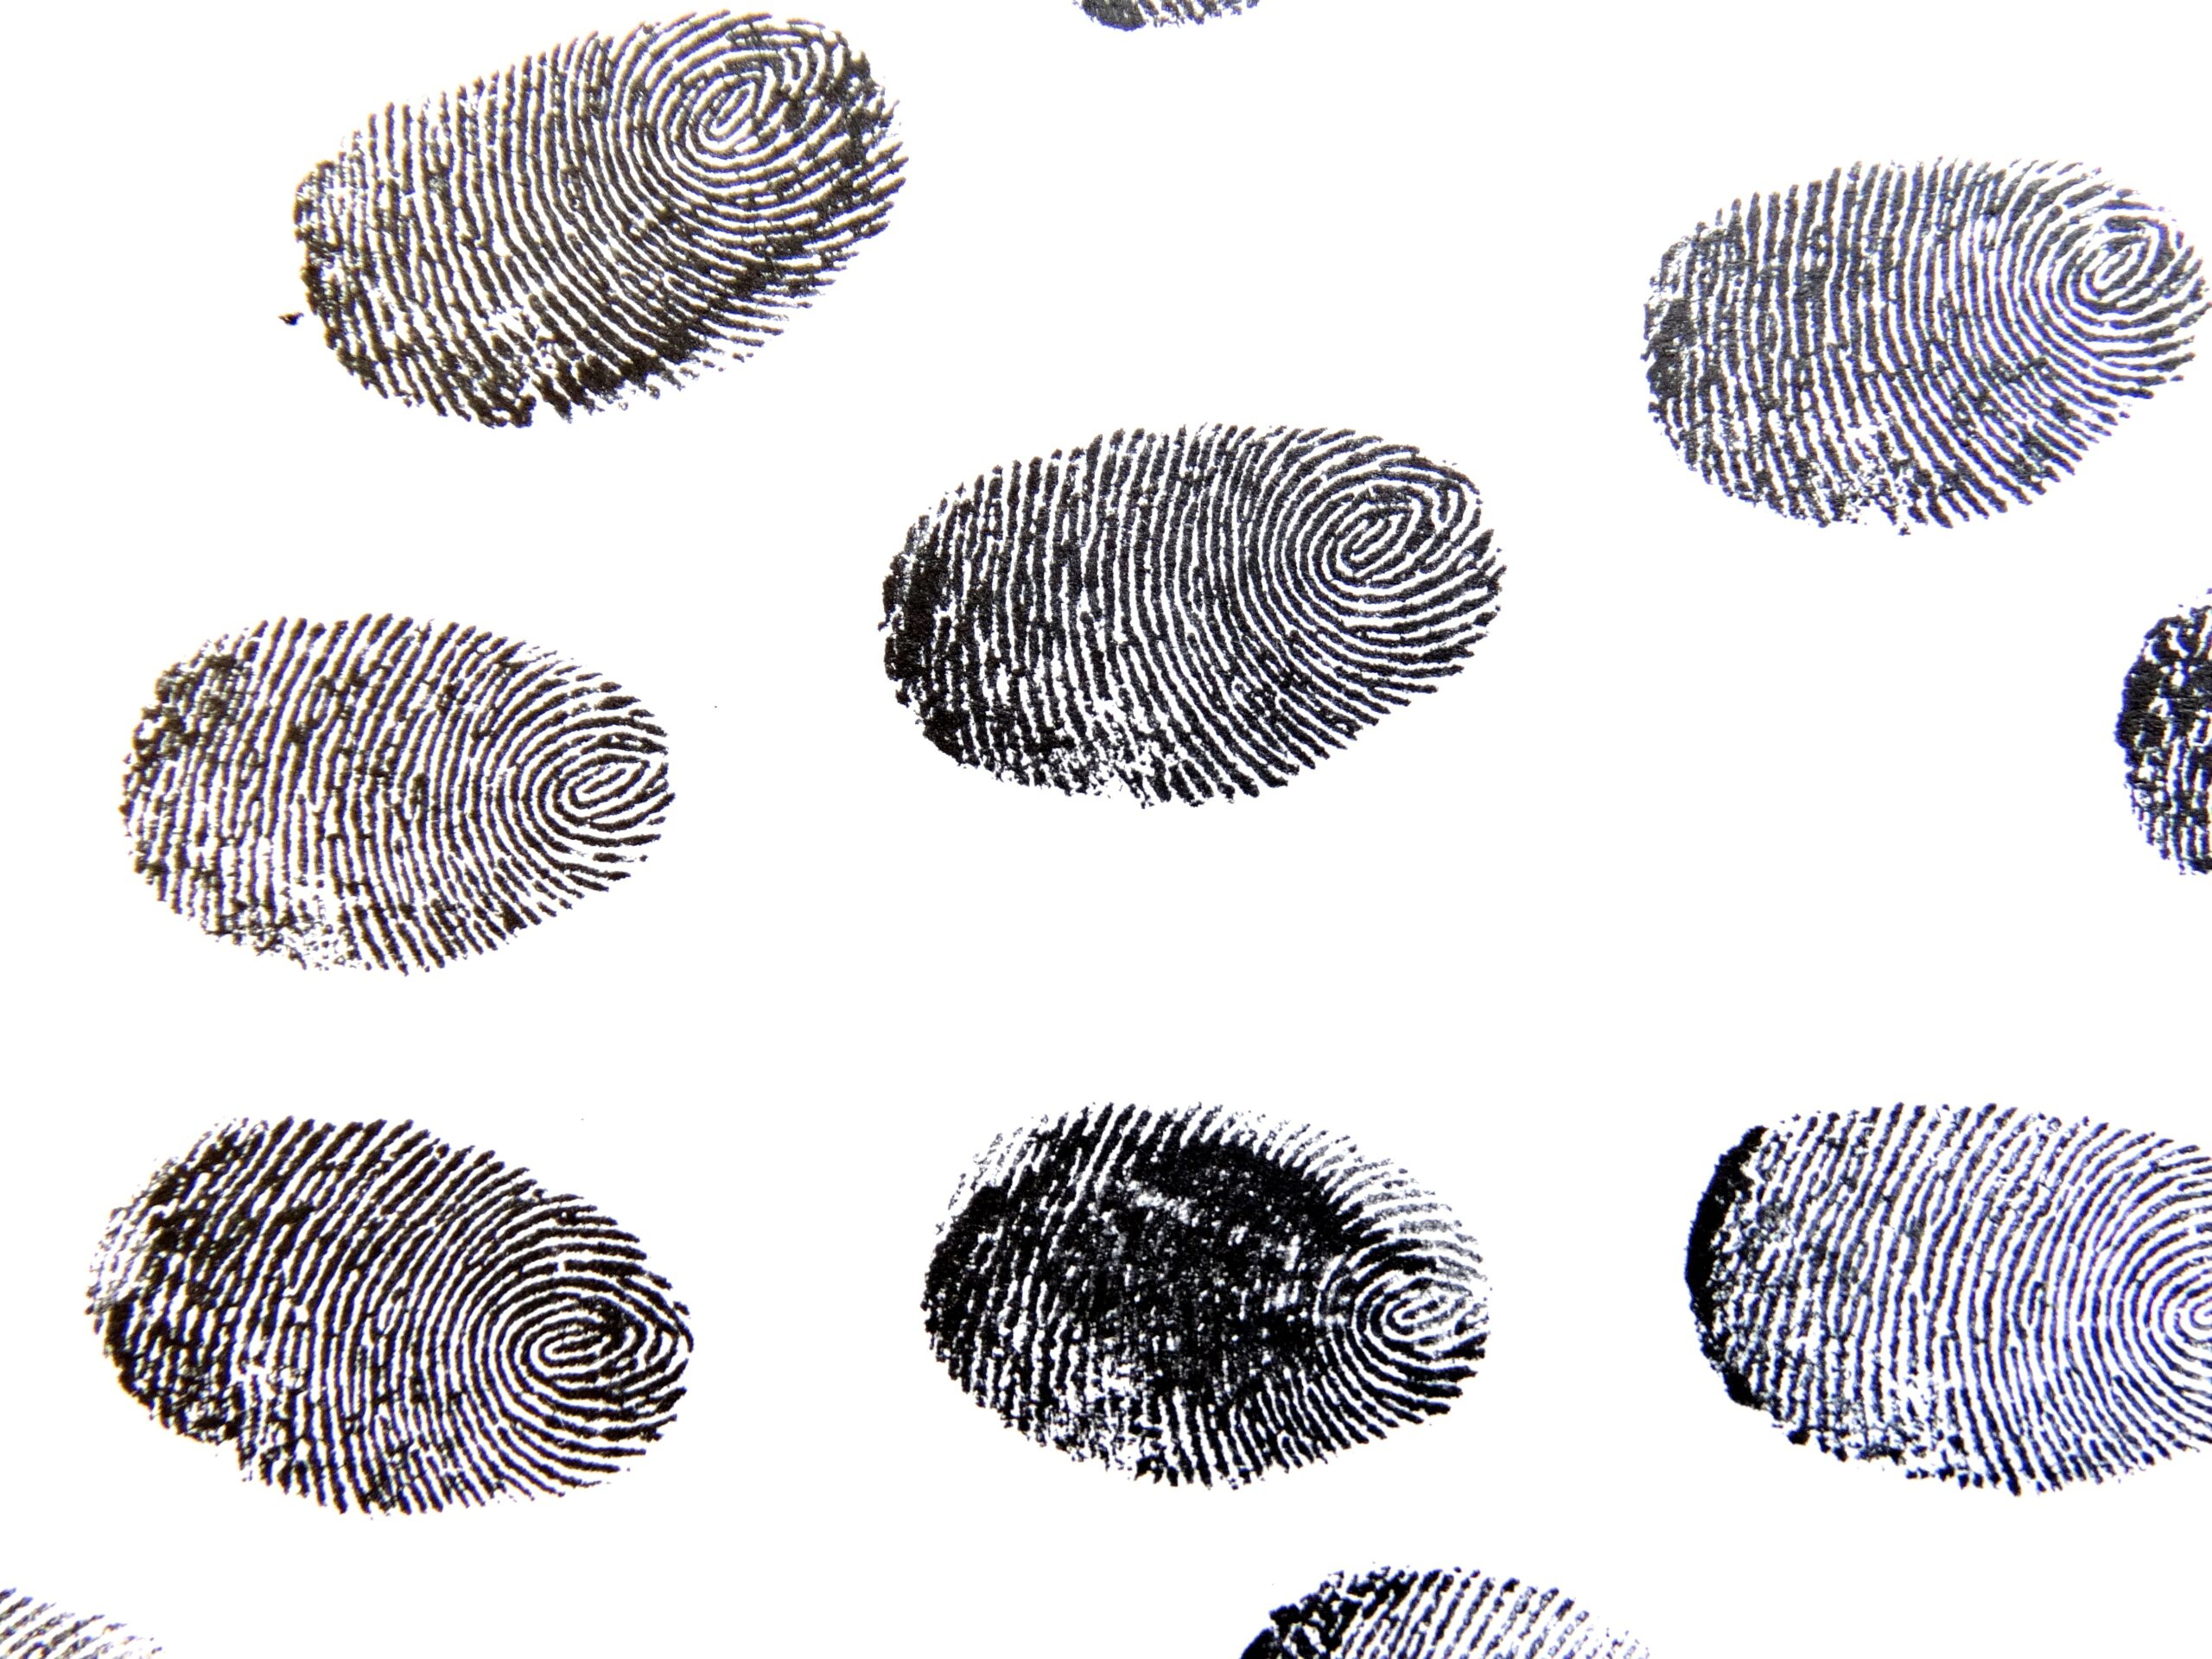 Новое открытие:  криминалисты сомневаются в уникальности отпечатков пальцев